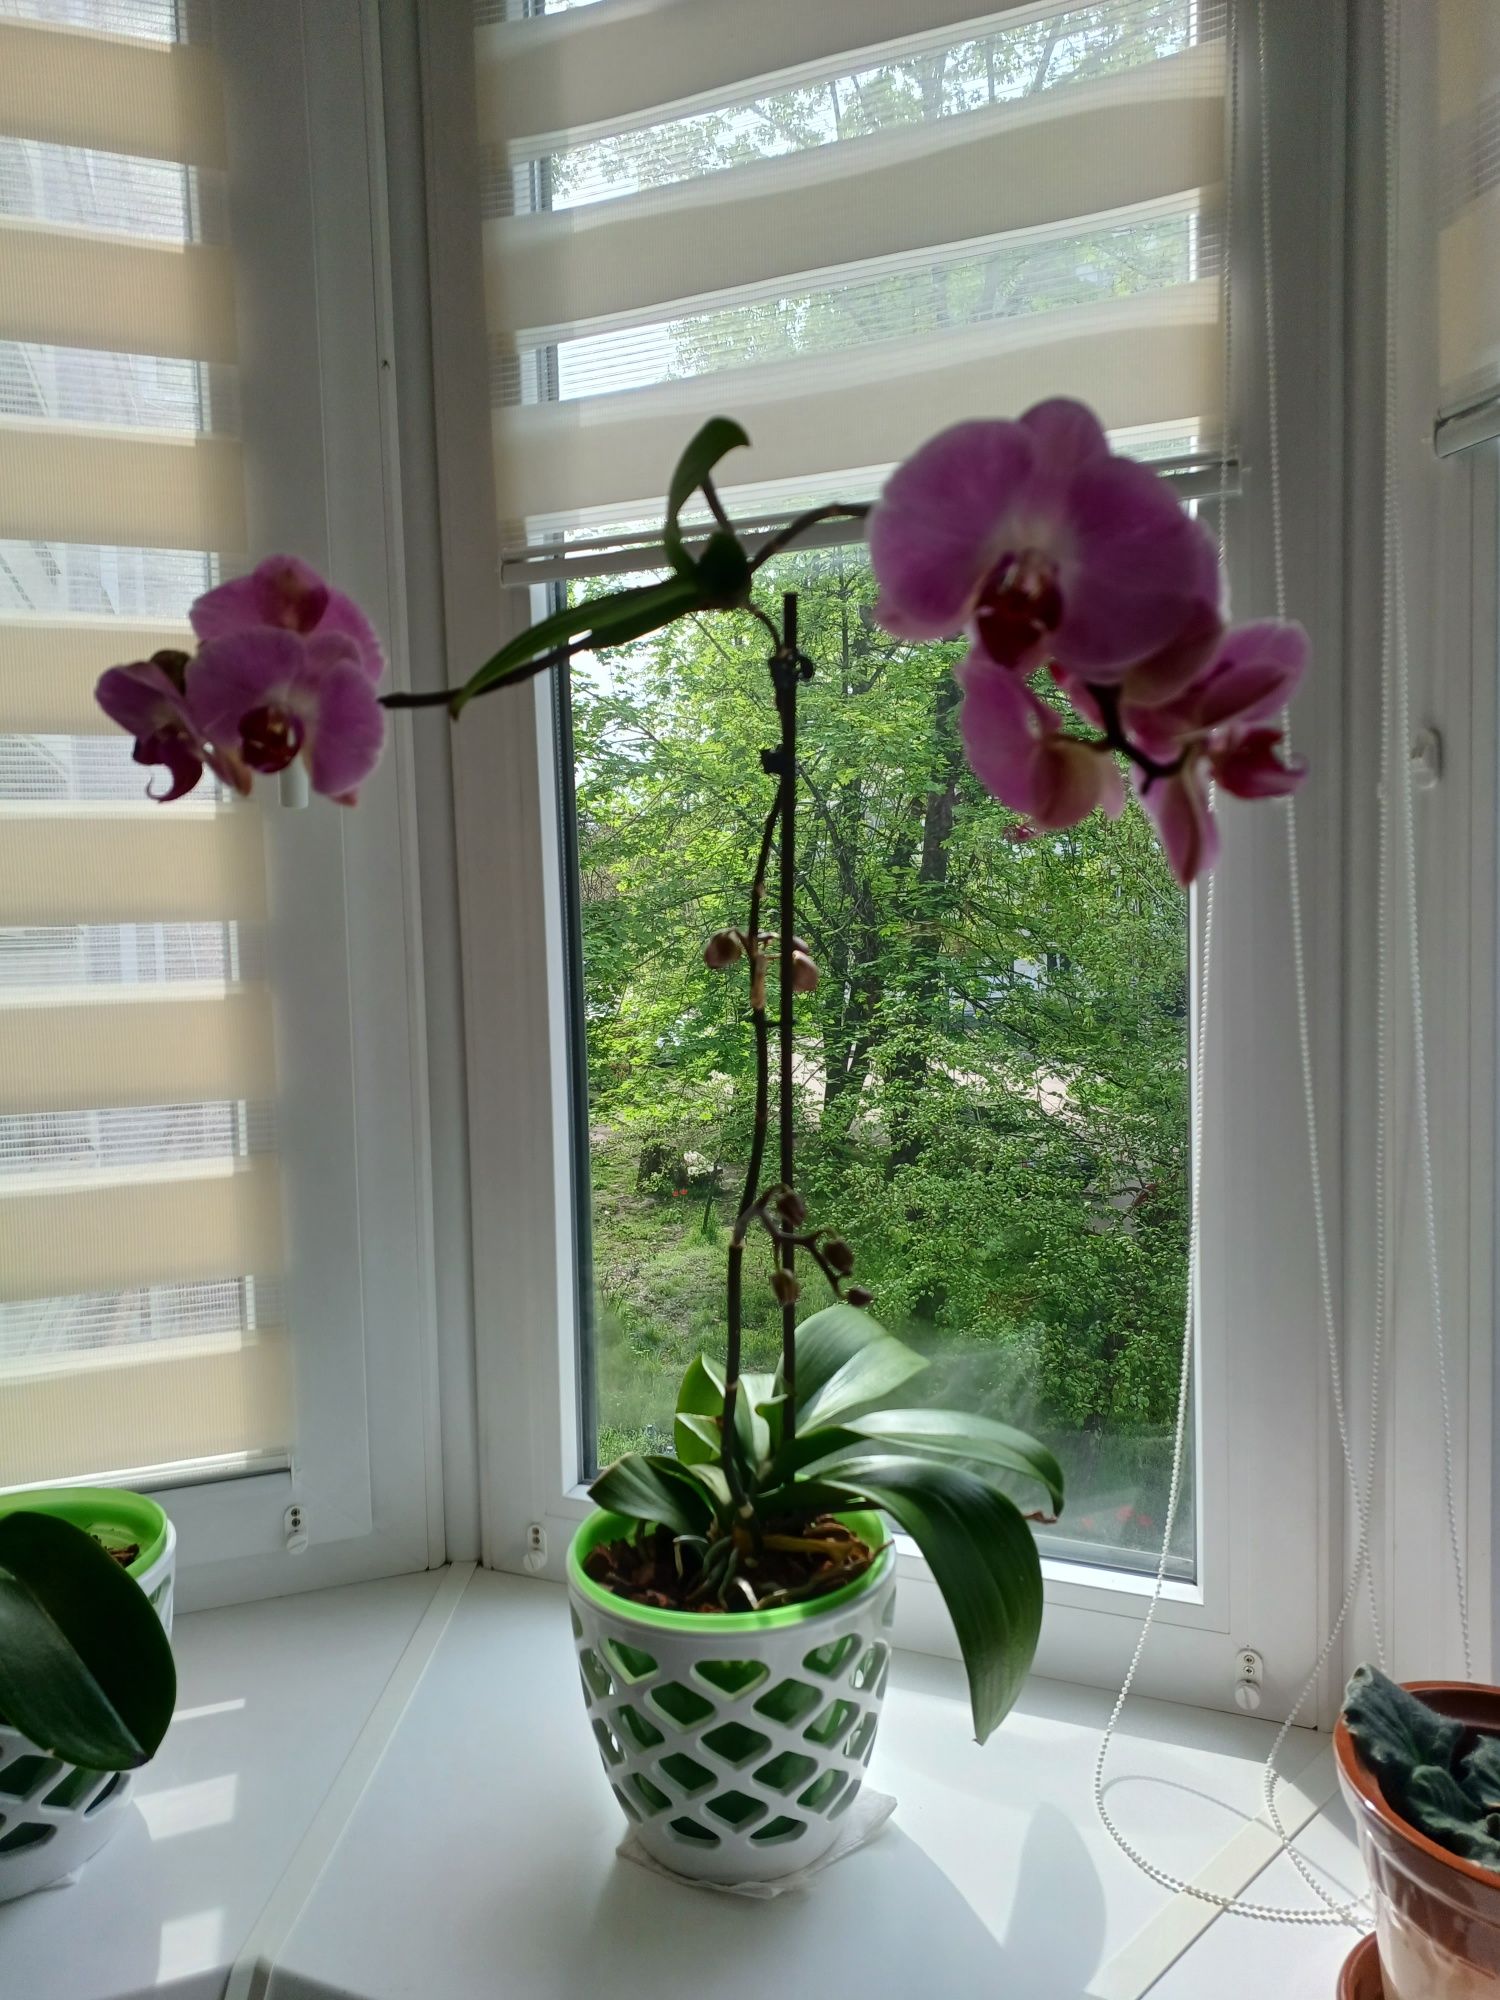 Продам орхидею,домашняя,выращенная с любовью